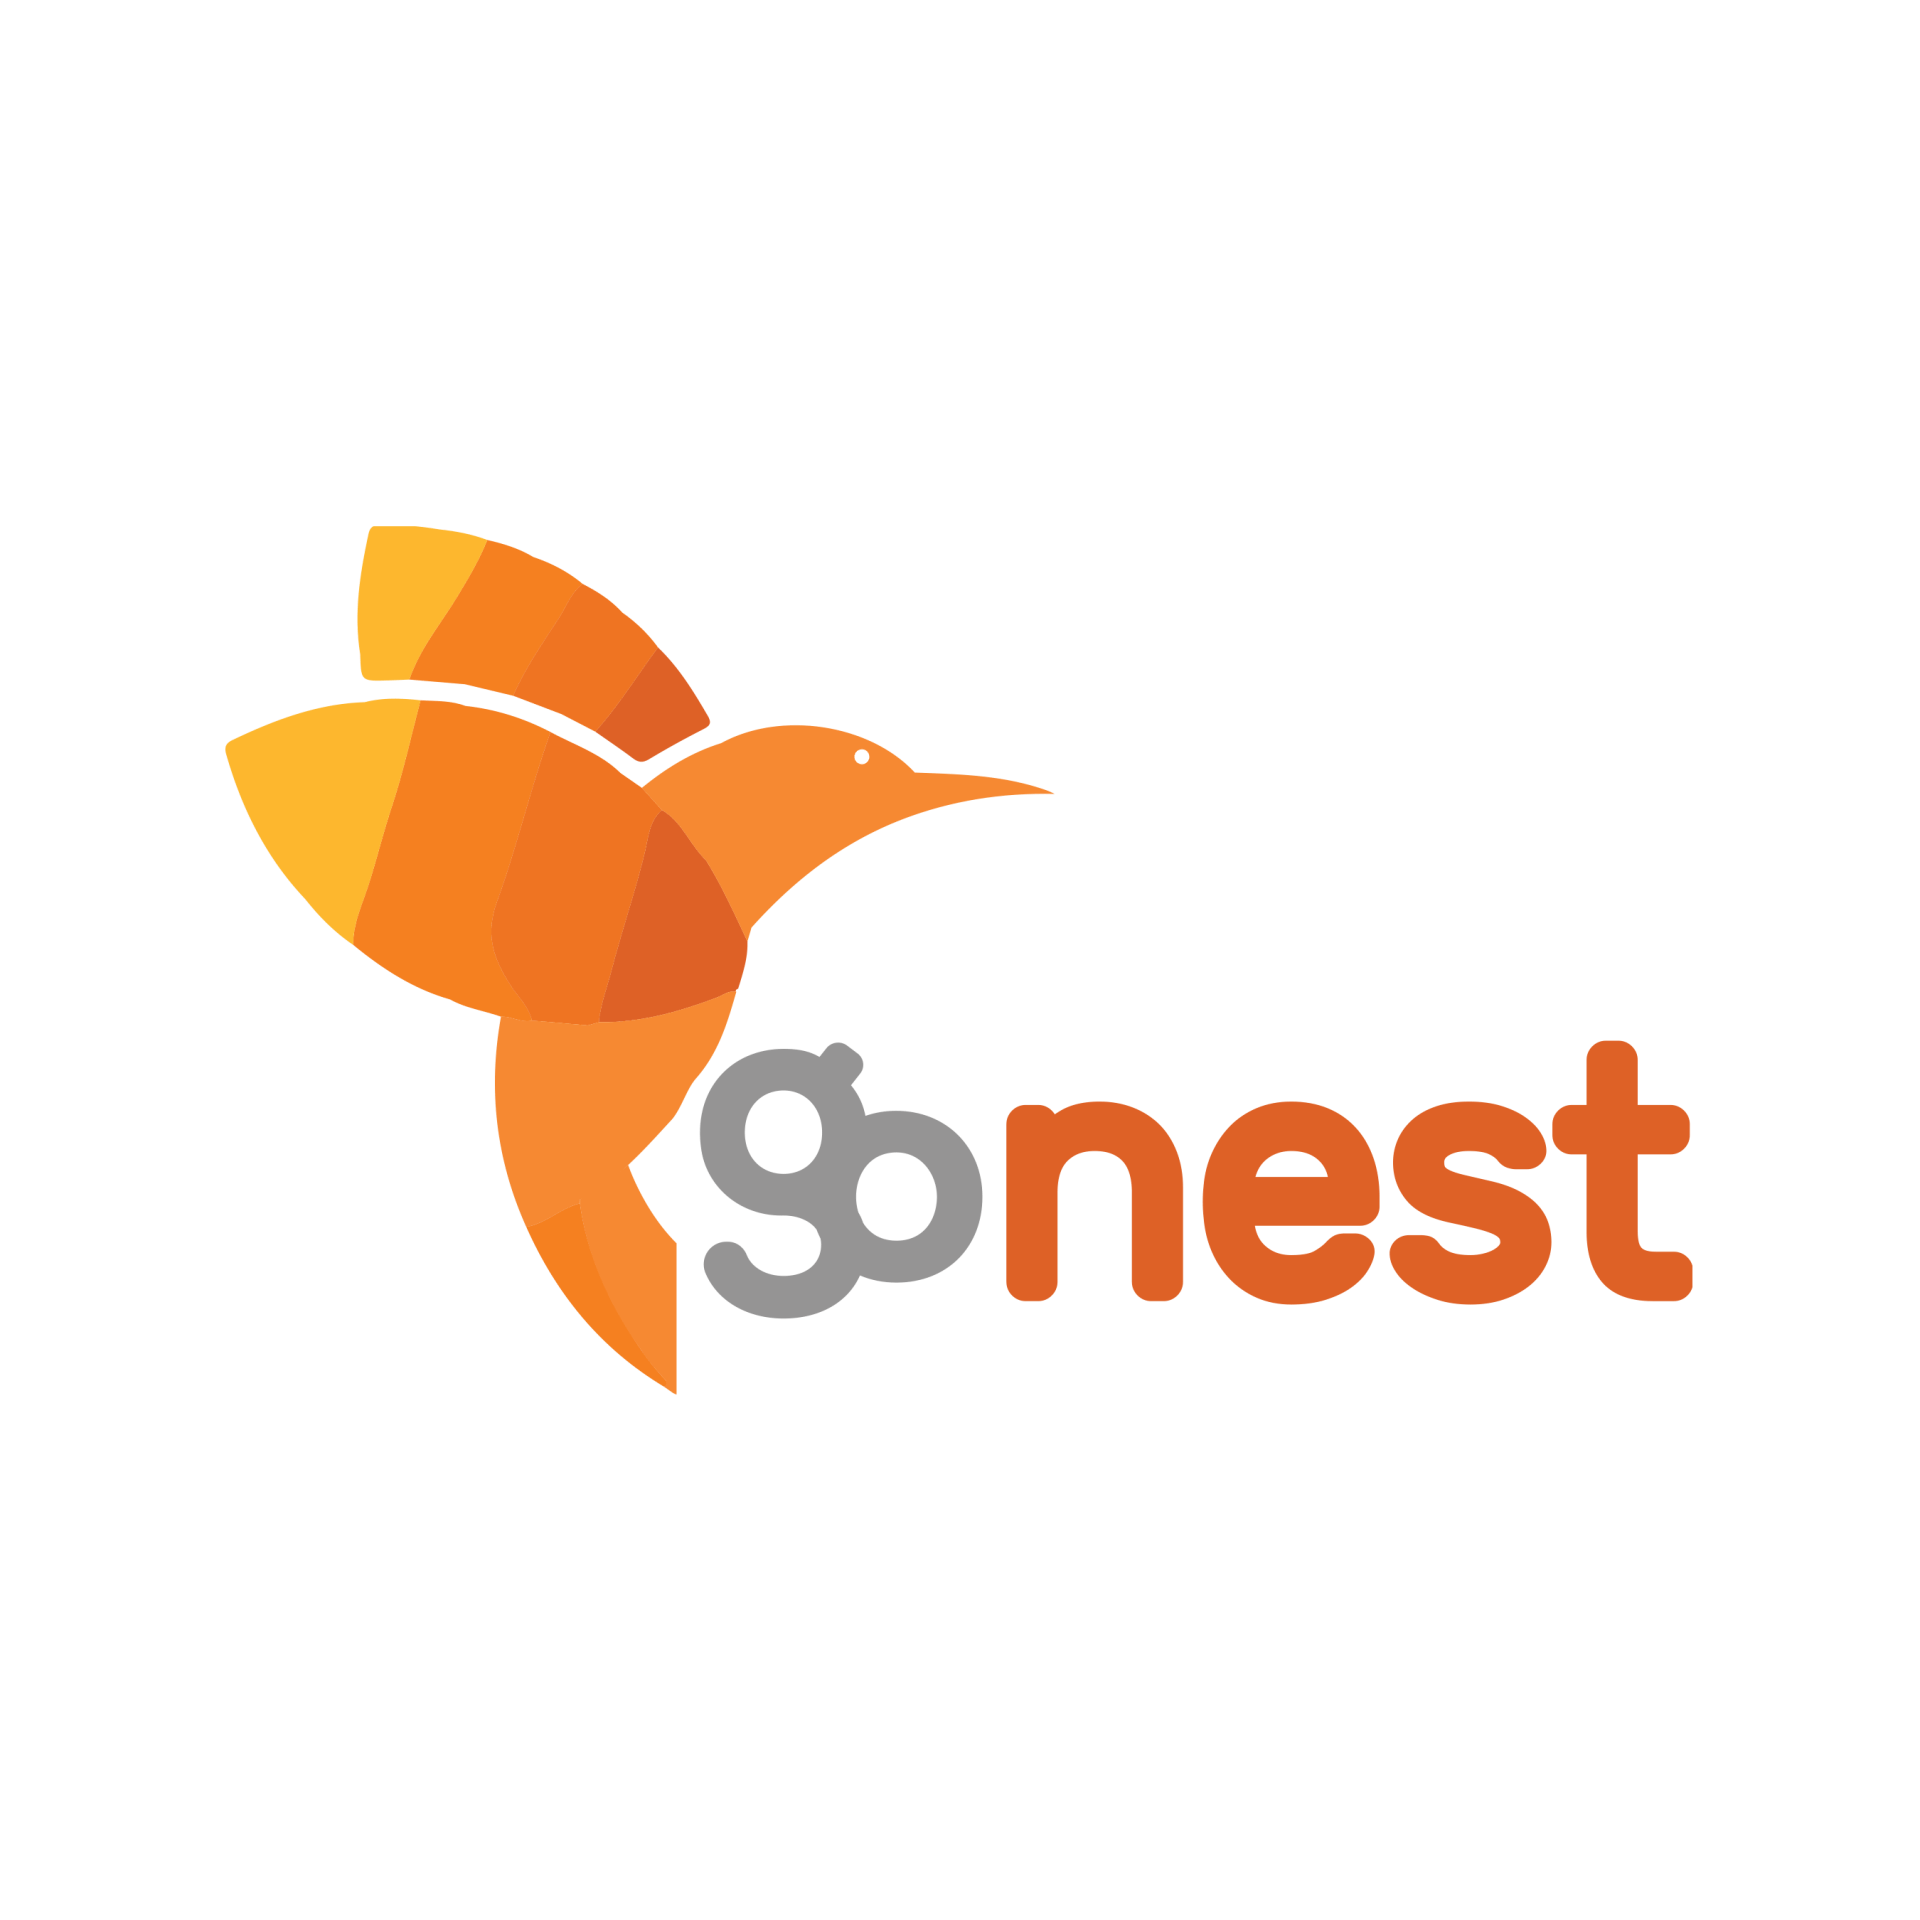 Coastal Nest Logo